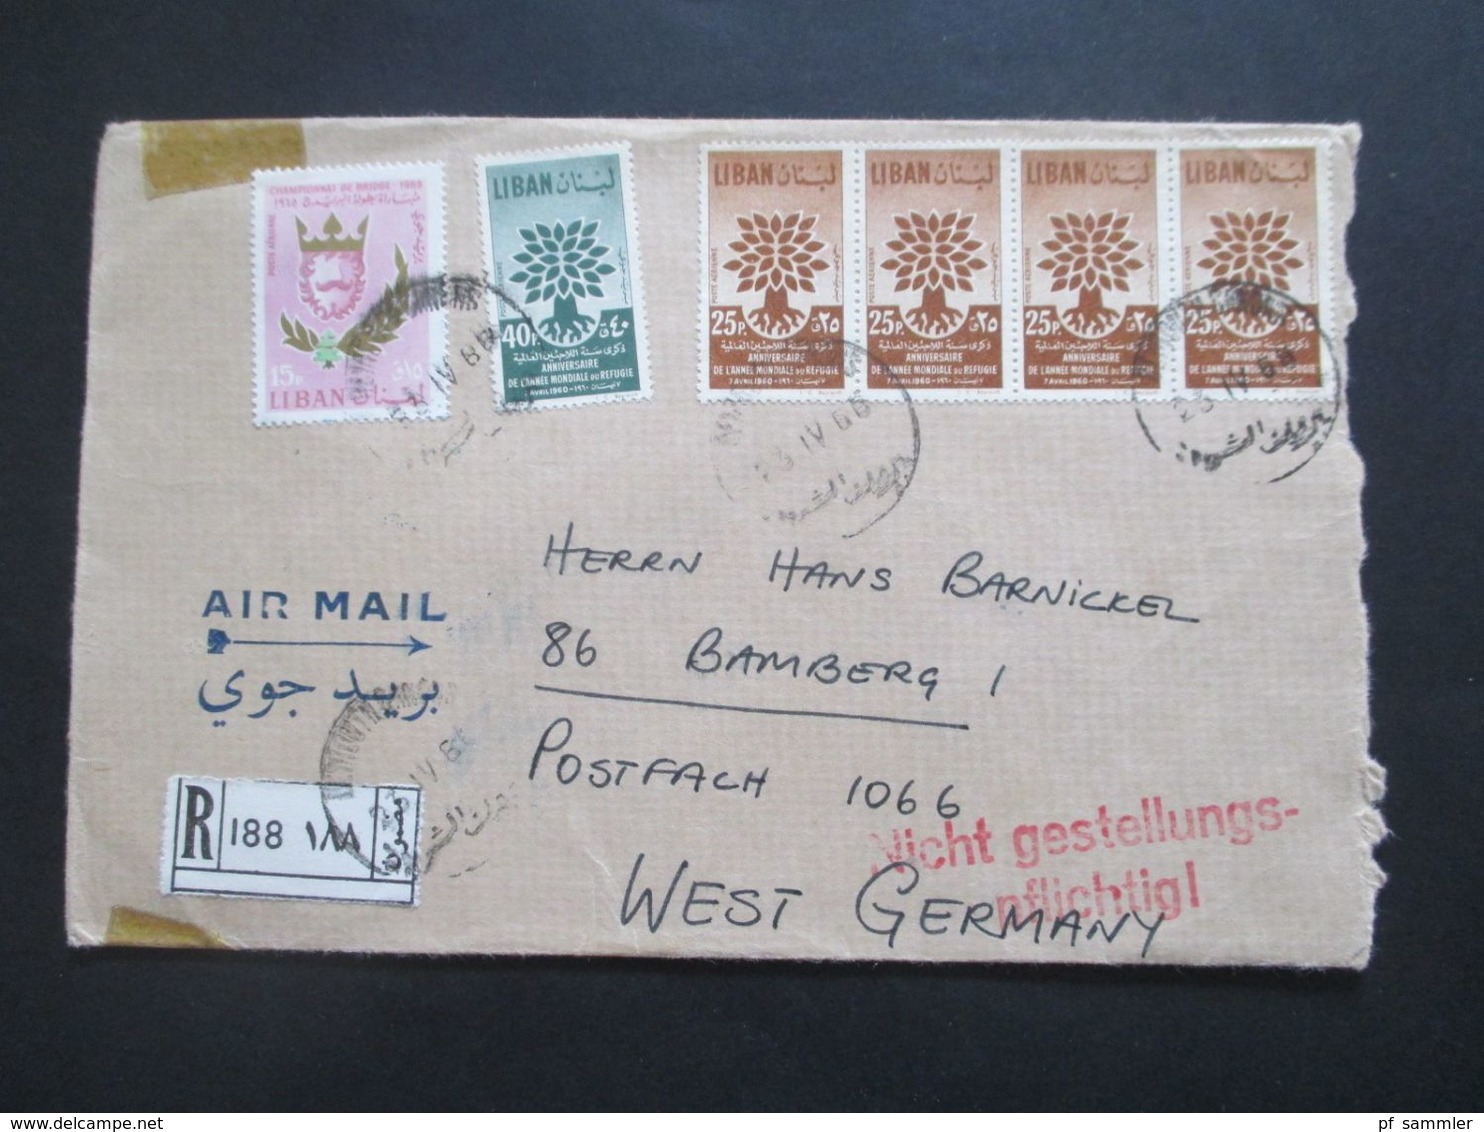 Libanon 1966 Einschreiben Air Mail / Luftpost Roter Stempel L2 Nicht Gestellungspflichtig! Liban - Líbano